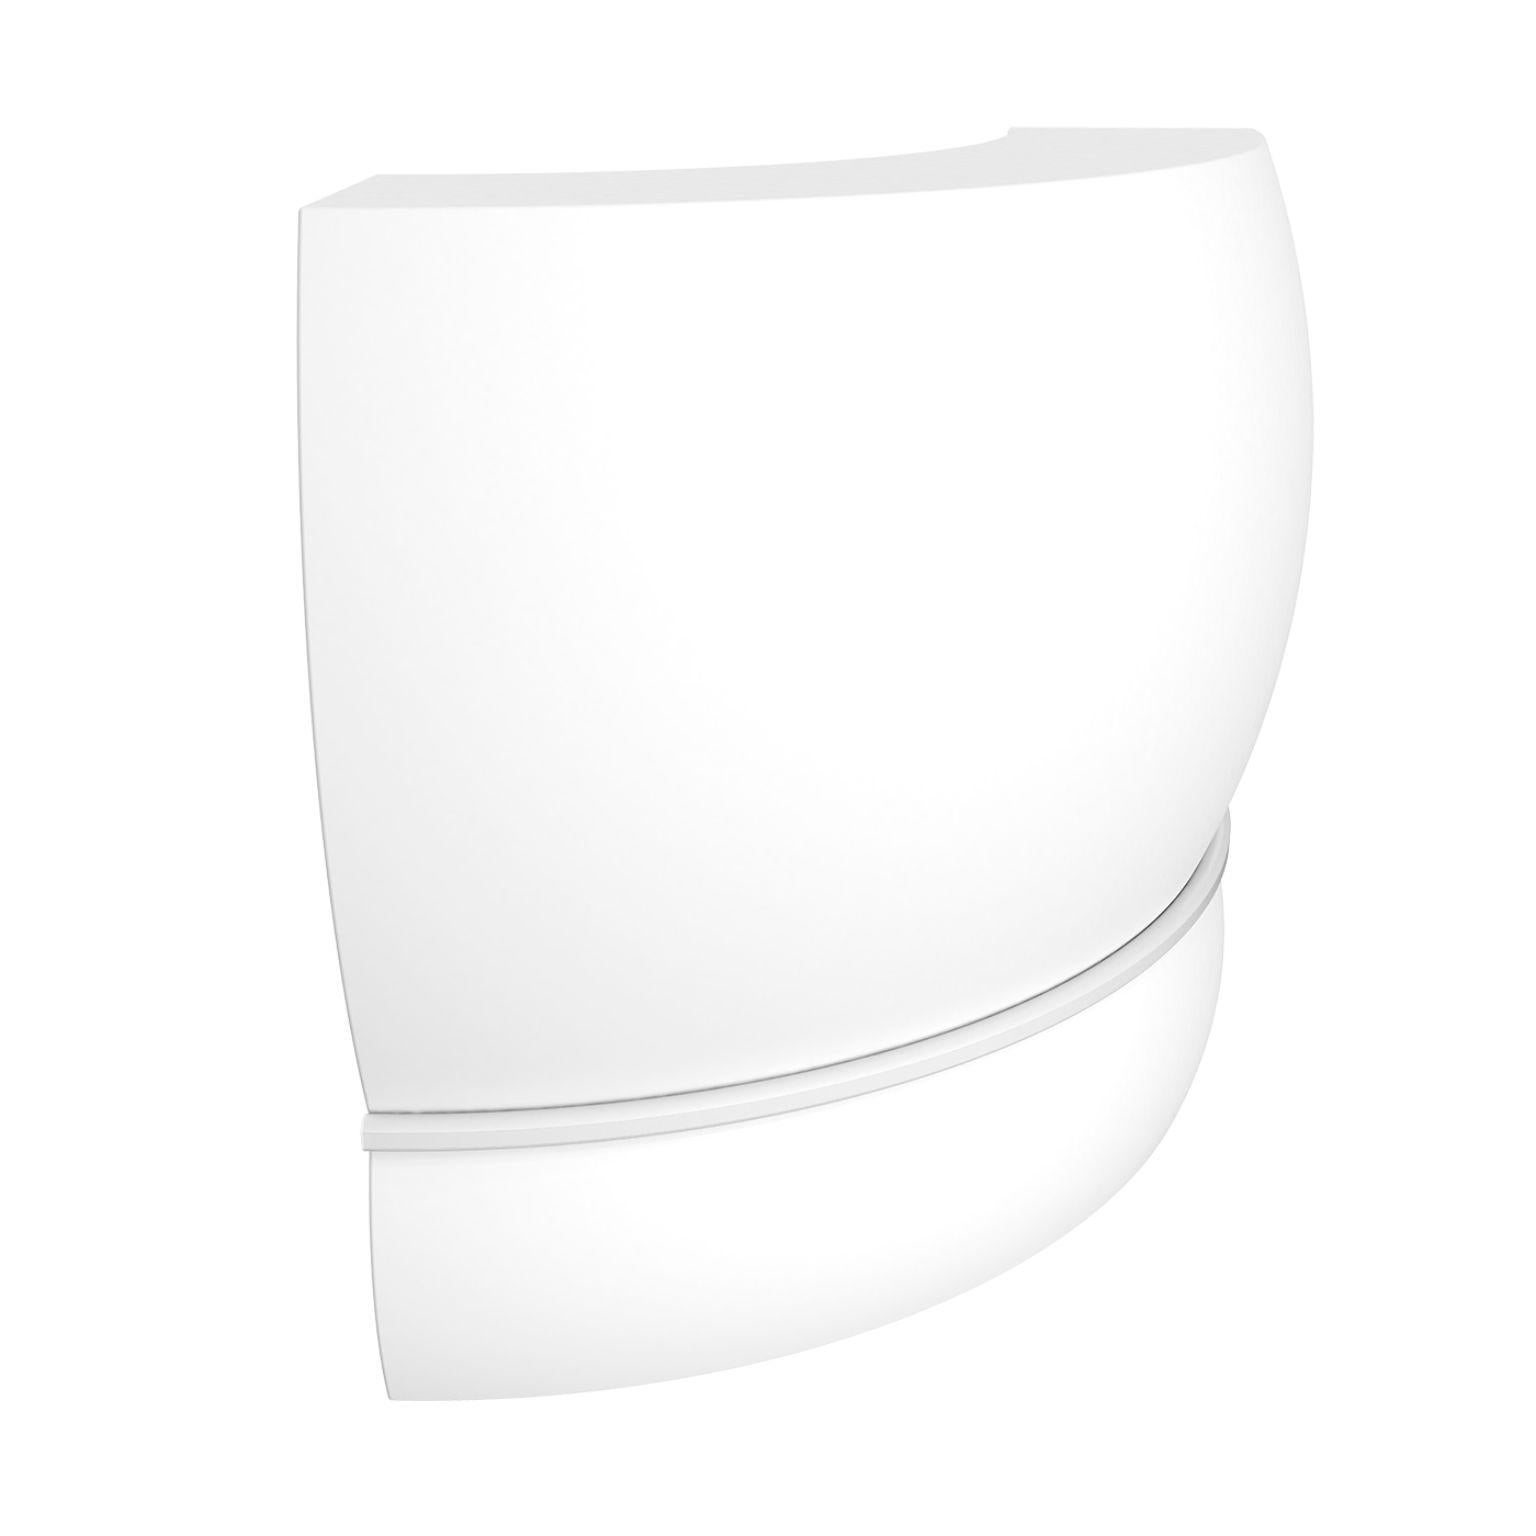 Weiße geschwungene Spitzenleiste von MOWEE
Abmessungen: T100 x B100 x H115 cm.
MATERIAL: Polyethylen und rostfreier Stahl.
Gewicht: 31 kg.
Auch in verschiedenen Farben und Ausführungen (lackiert, nachträglich beleuchtet) erhältlich. Optionaler